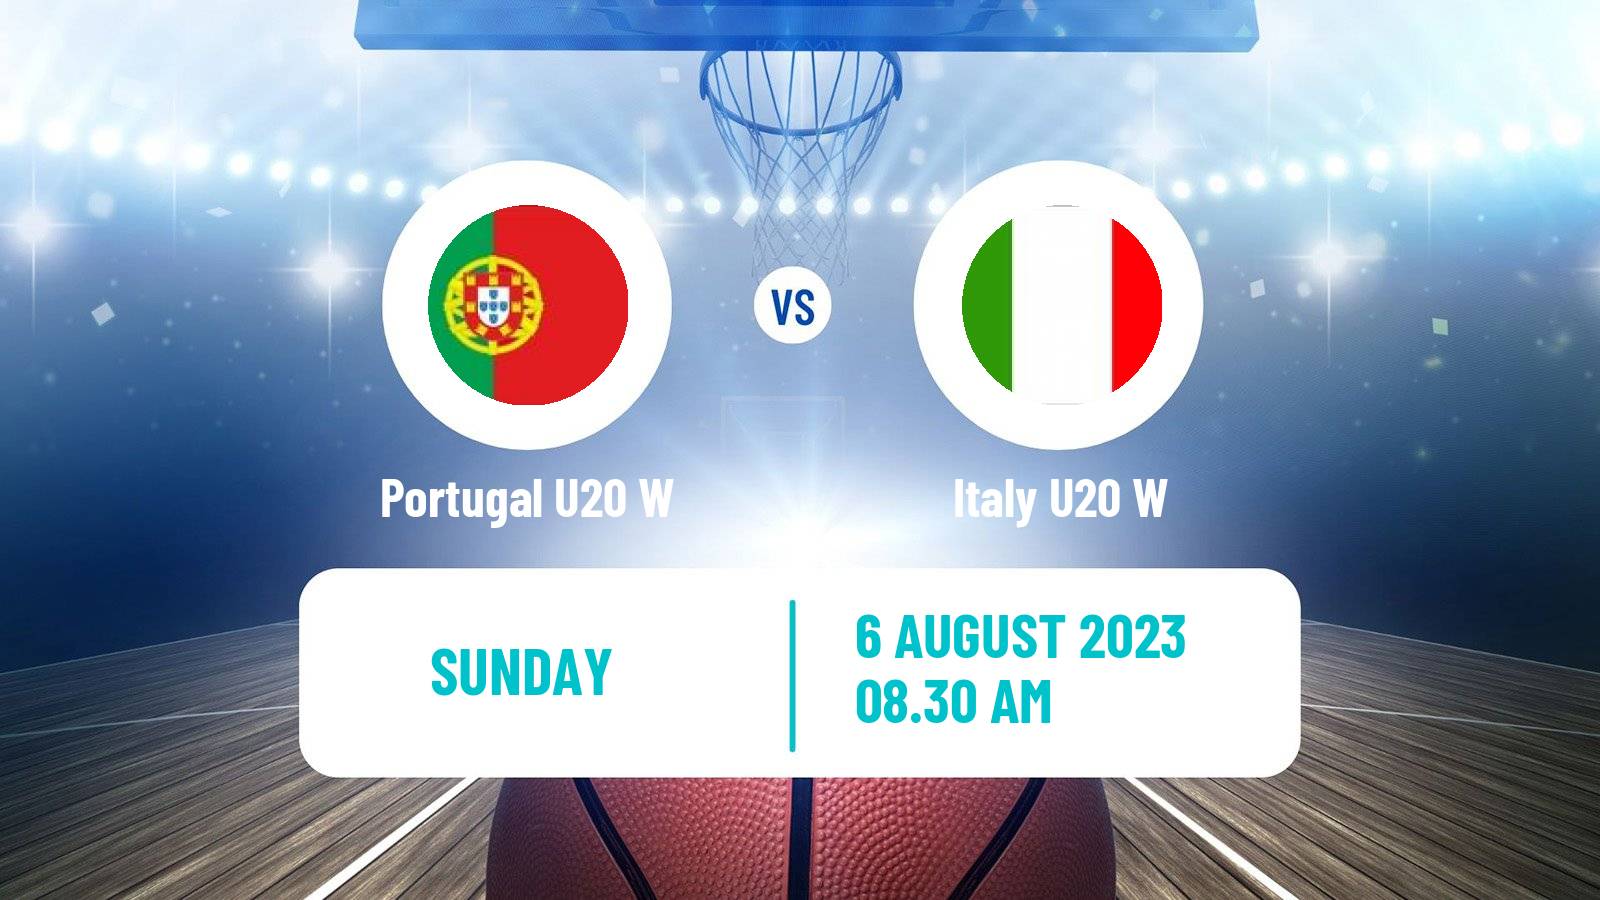 Basketball European Championship U20 Basketball Women Portugal U20 W - Italy U20 W